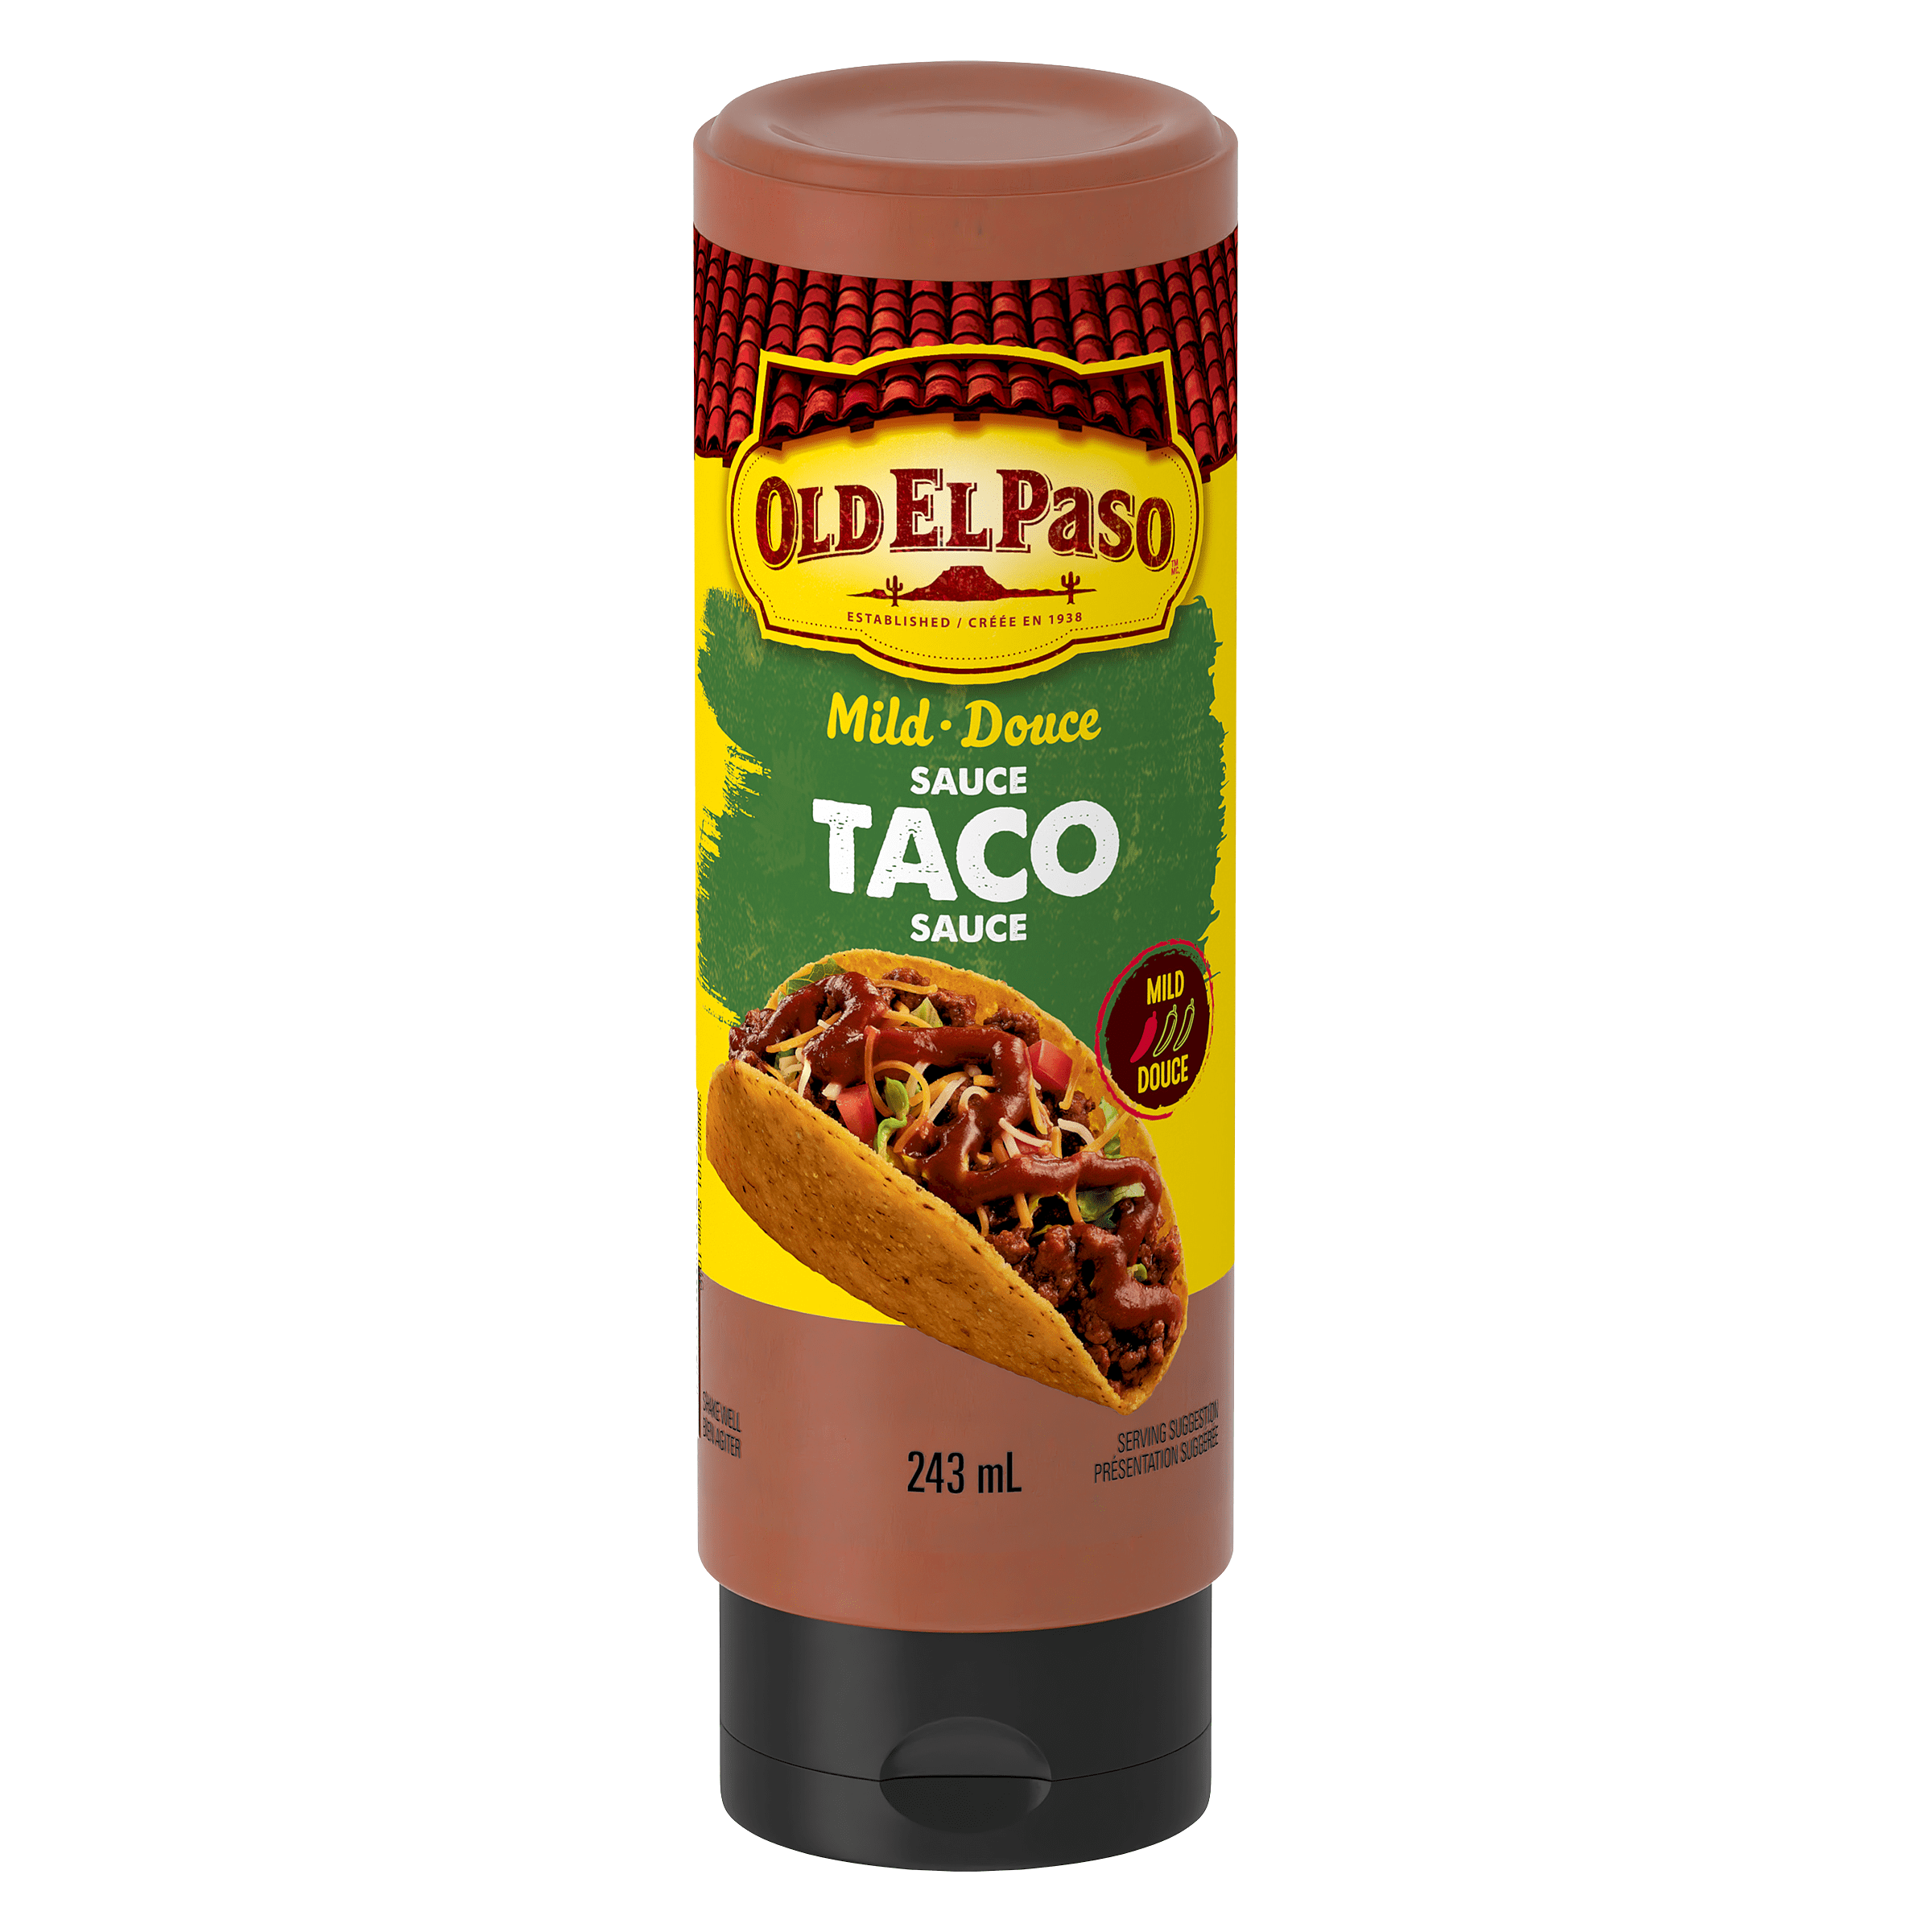 Taco Sauce Mild & Irresistible Taste - Old El Paso